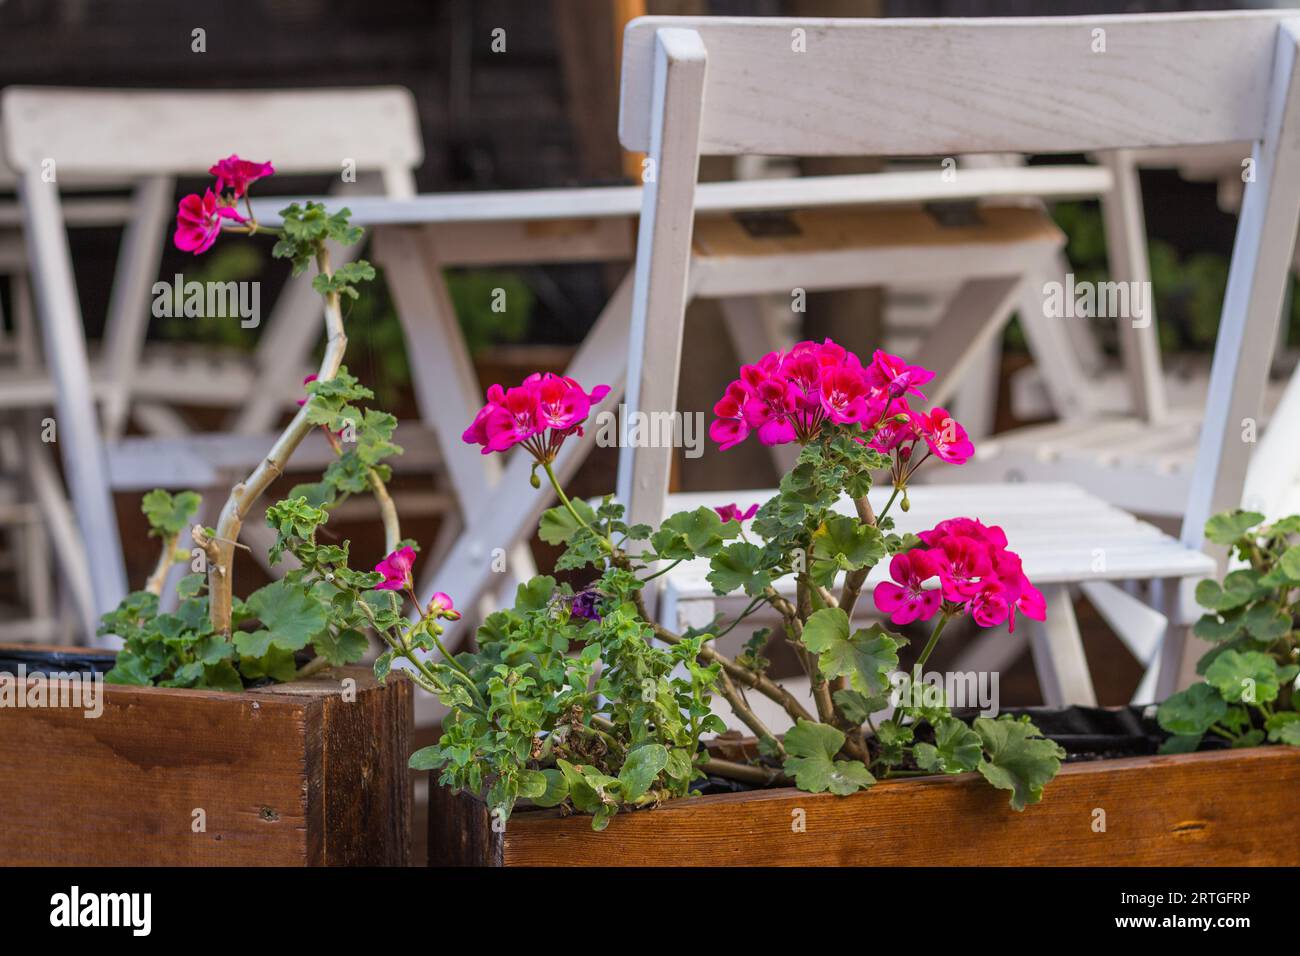 Rosafarbene Blumen auf der Terrasse. Blumentopf im Straßencafé. Weiße Gartenmöbel mit Blumendesign. Elegantes Café mit Blumentöpfen. Dekorierte Terrasse. Stockfoto